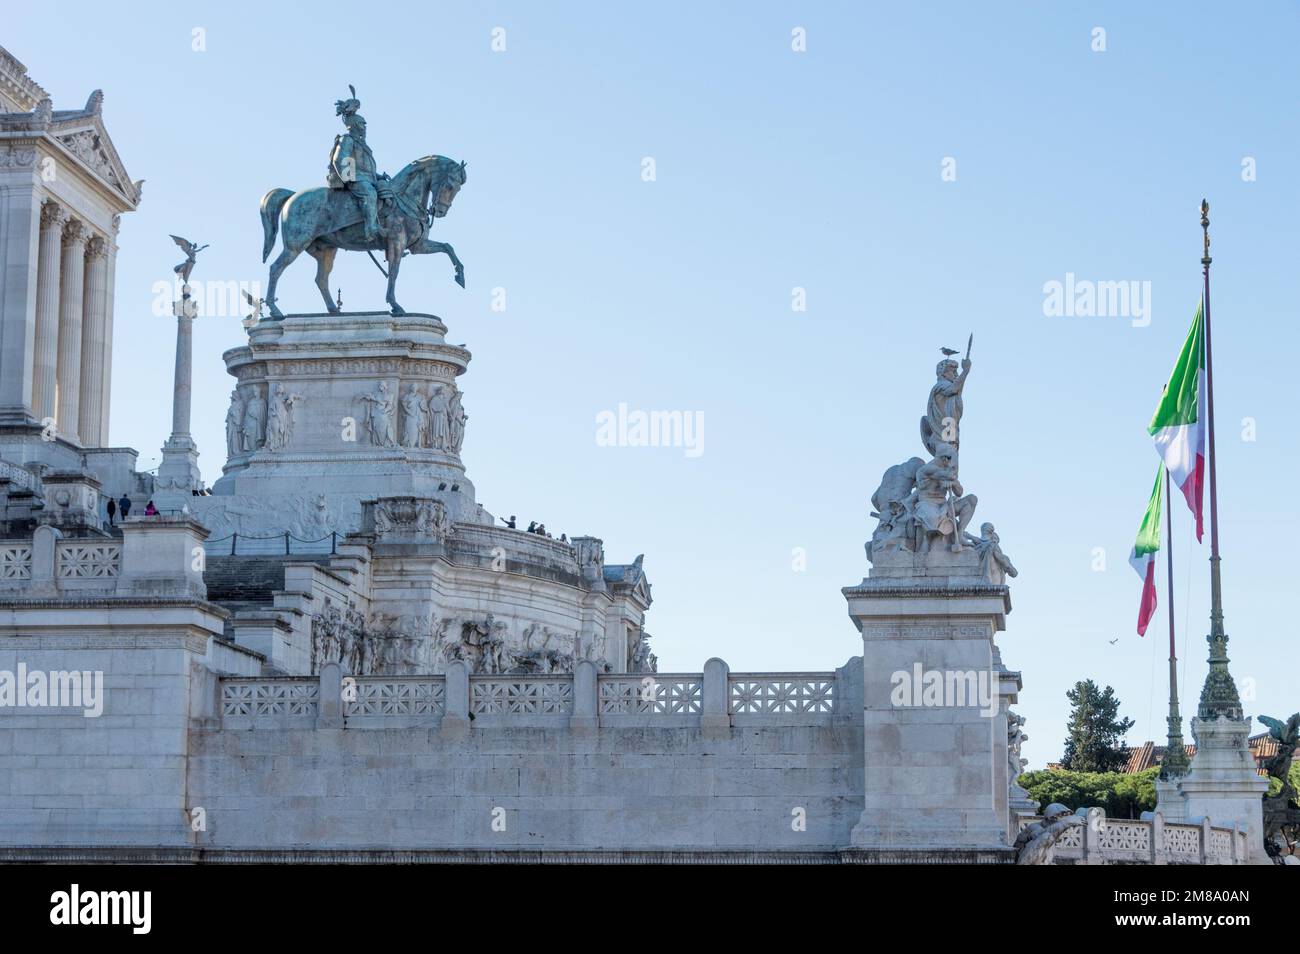 Roma - Vittoriano o Altare della Patria (Altar de la patria), con el monumento ecuestre de Vittorio Emanuele II (1820-1878), primer rey de Ita Foto de stock